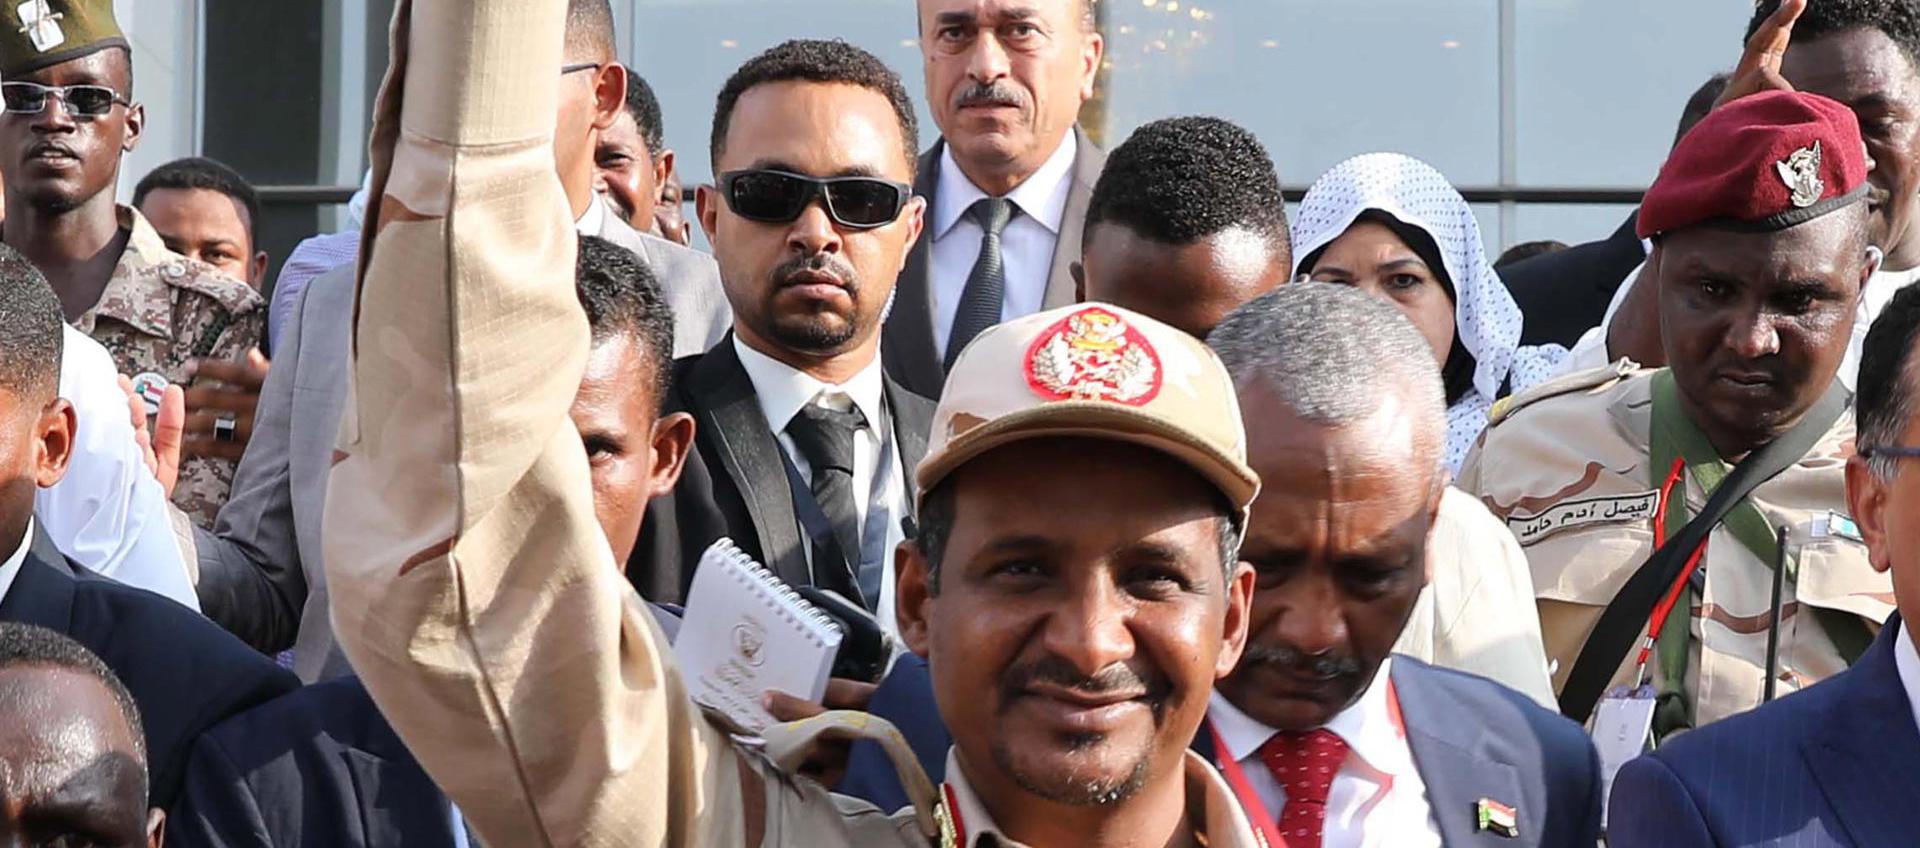 El líder de la organización paramilitar sudanesa Fuerzas de Apoyo Rápido (FAR), Mohamed Hamdan Dagalo